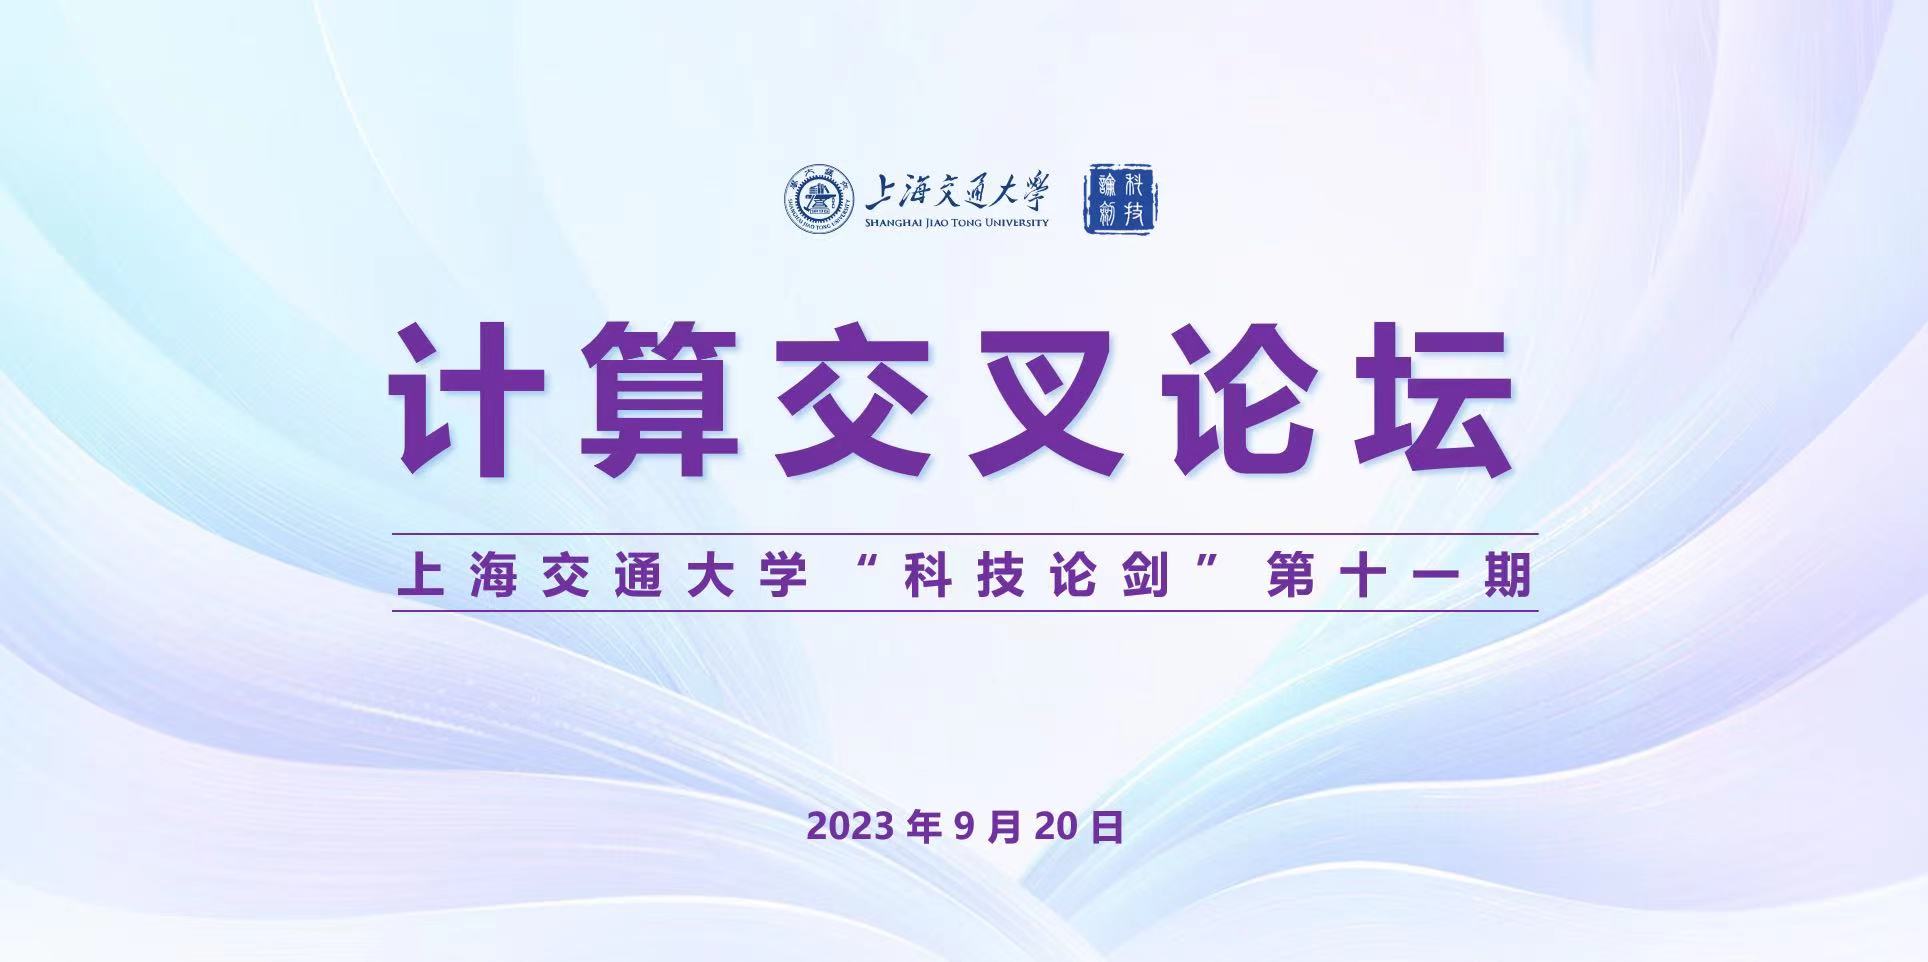 上海交通大学第十一期 “科技论剑”——计算交叉论坛举办